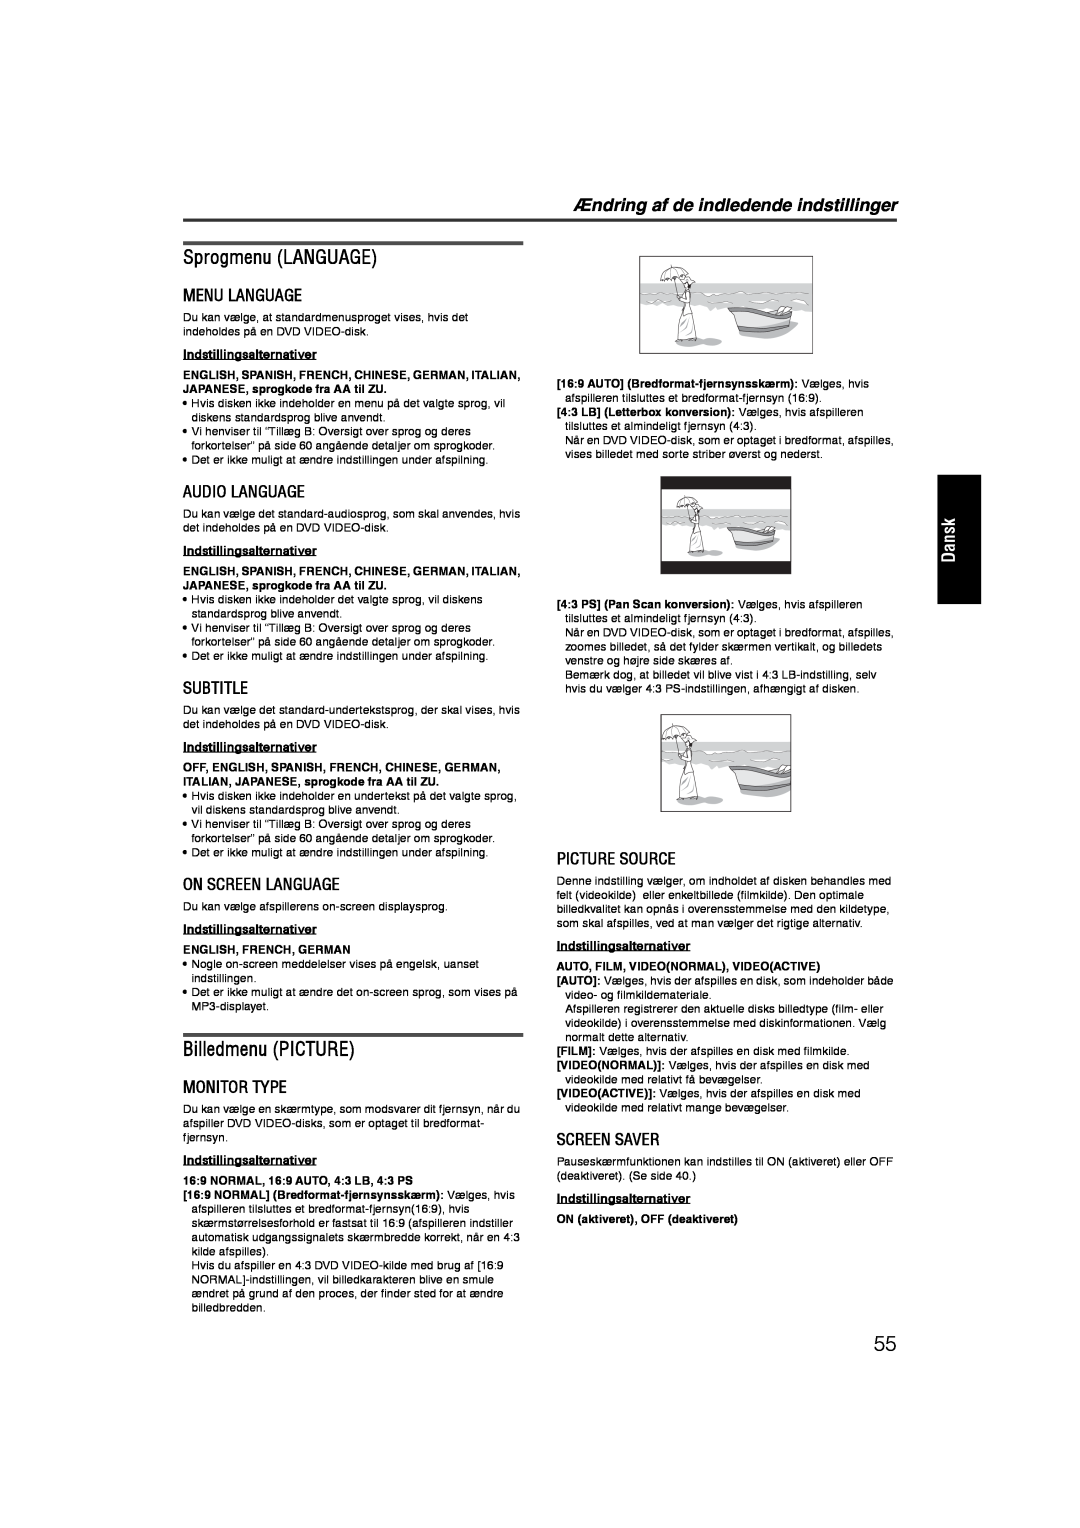 JVC RX-ES1SL manual Sprogmenu LANGUAGE, Billedmenu PICTURE, Ændring af de indledende indstillinger, Dansk, Menu Language 